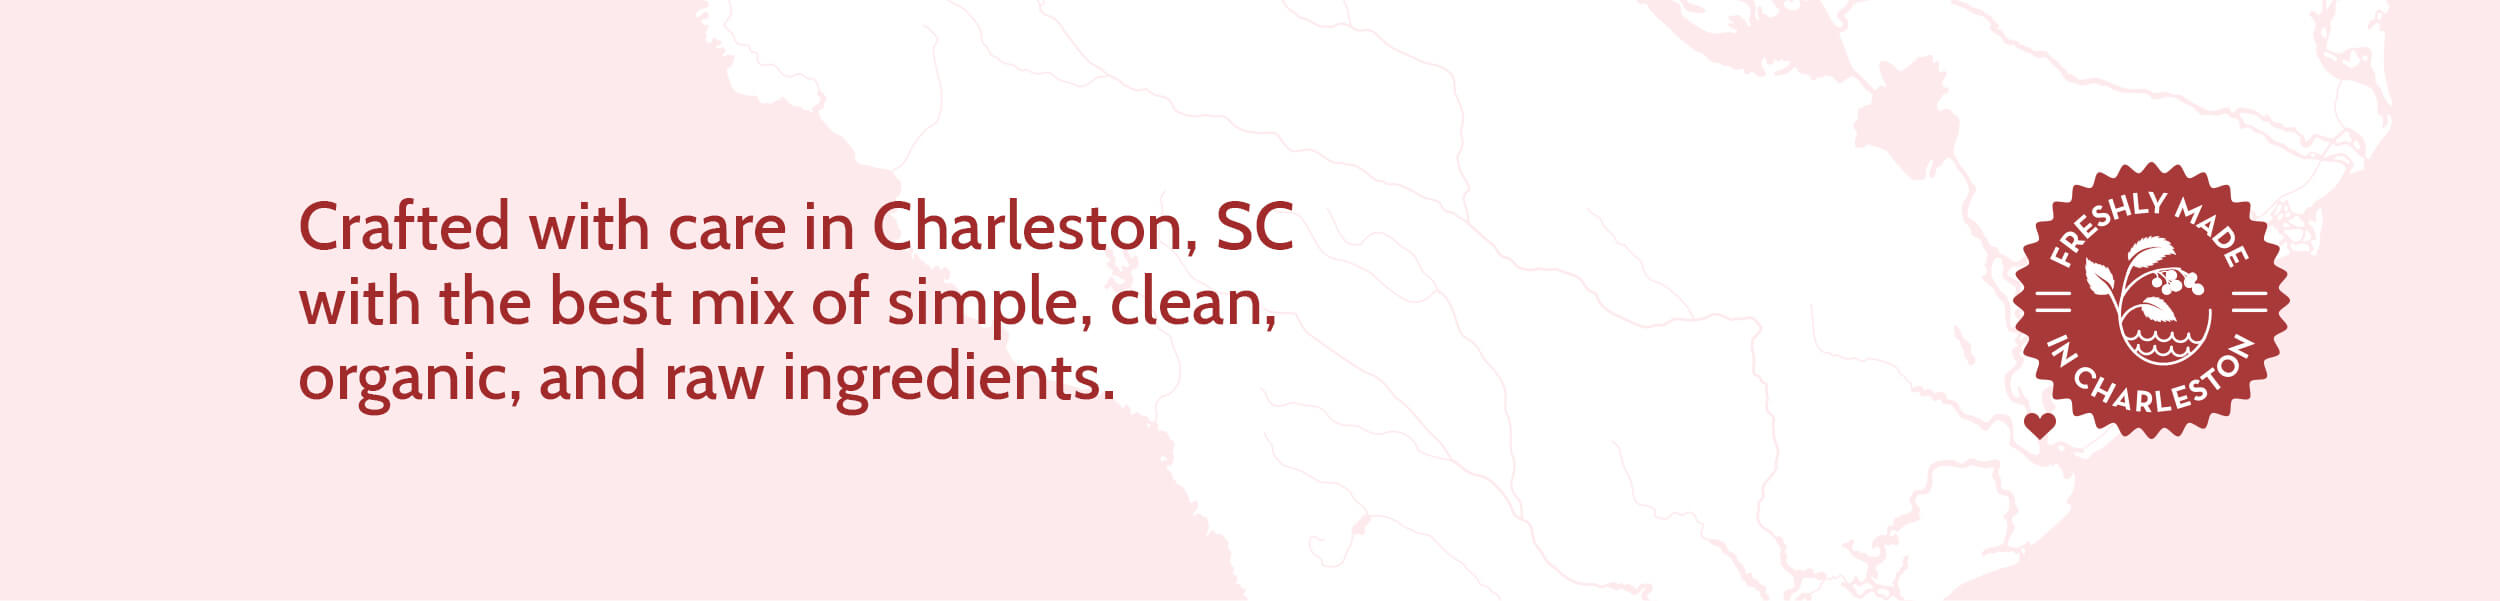 A map image highlighting Charleston, South Carolina.